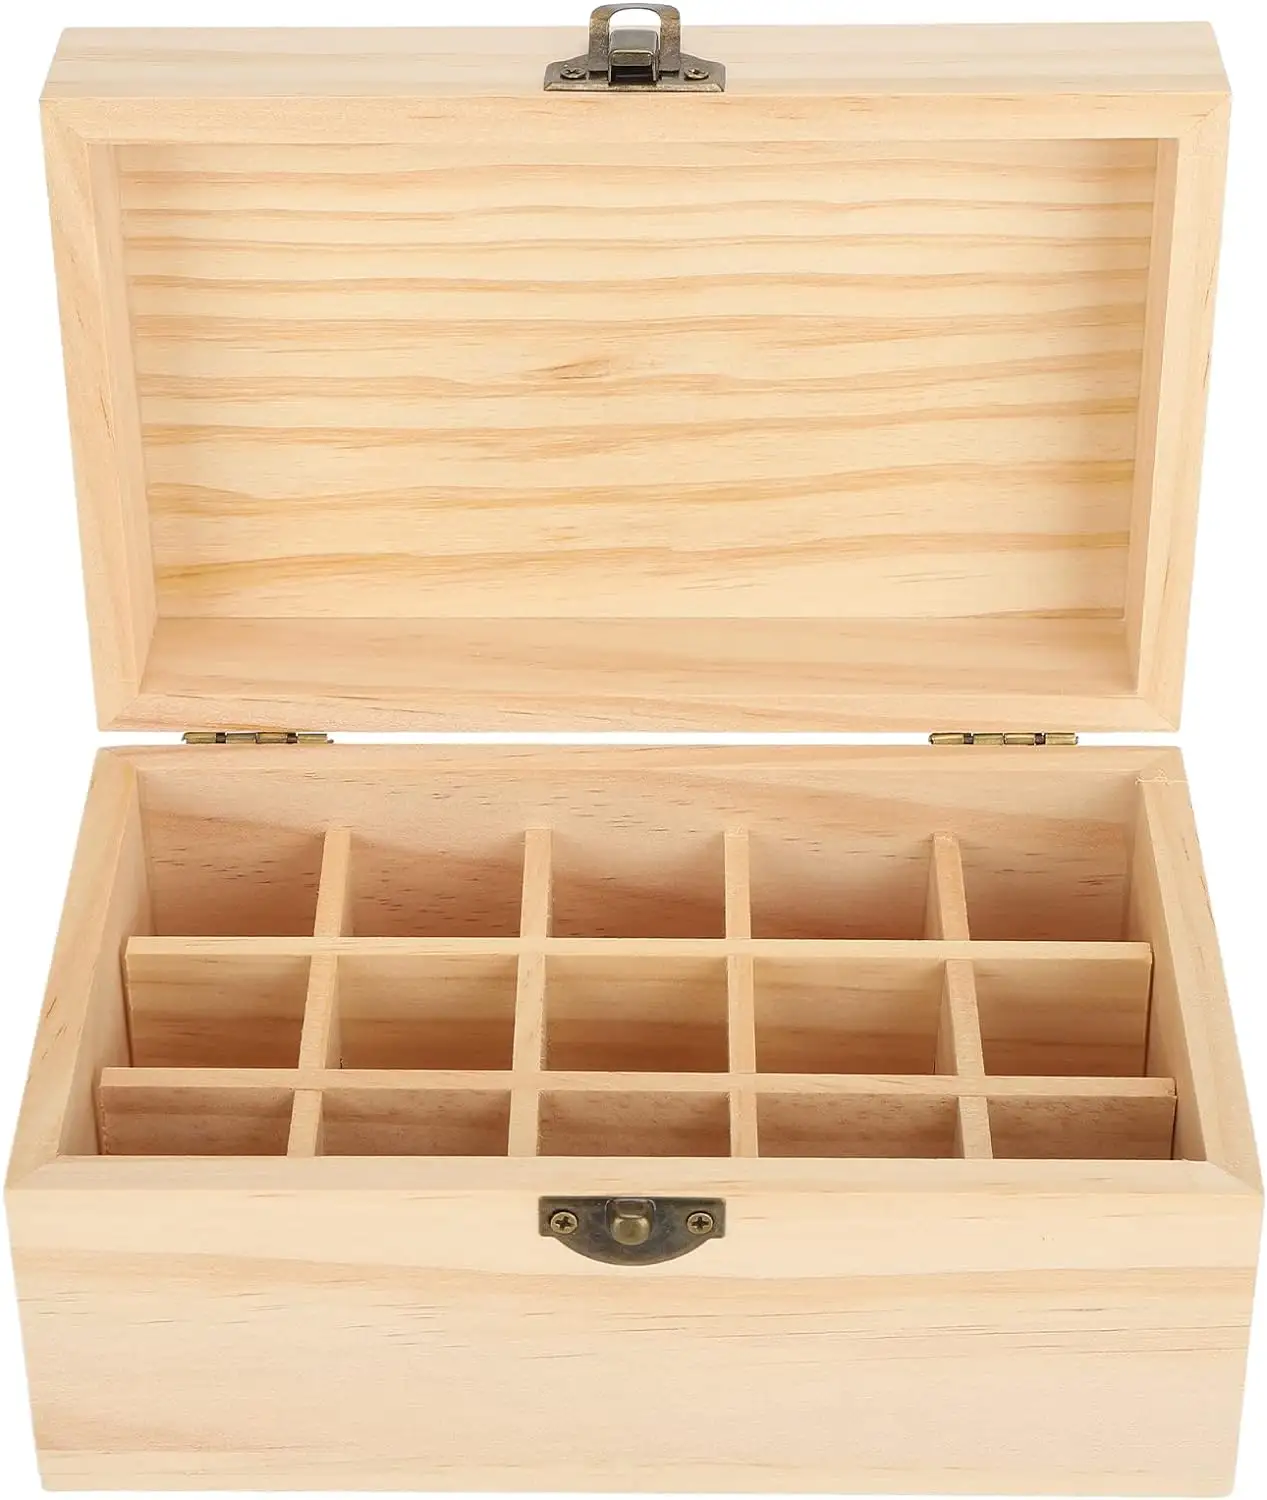 صندوق خشبي لزيوت الأساسية يحتوي على 15 فتحة صندوق لتخزين الزيوت الأساسية صندوق صنوبر لتخزين الزيوت الأساسية صندوق تخزين منزلي بأبعاد 18.2×11.5×9 سم